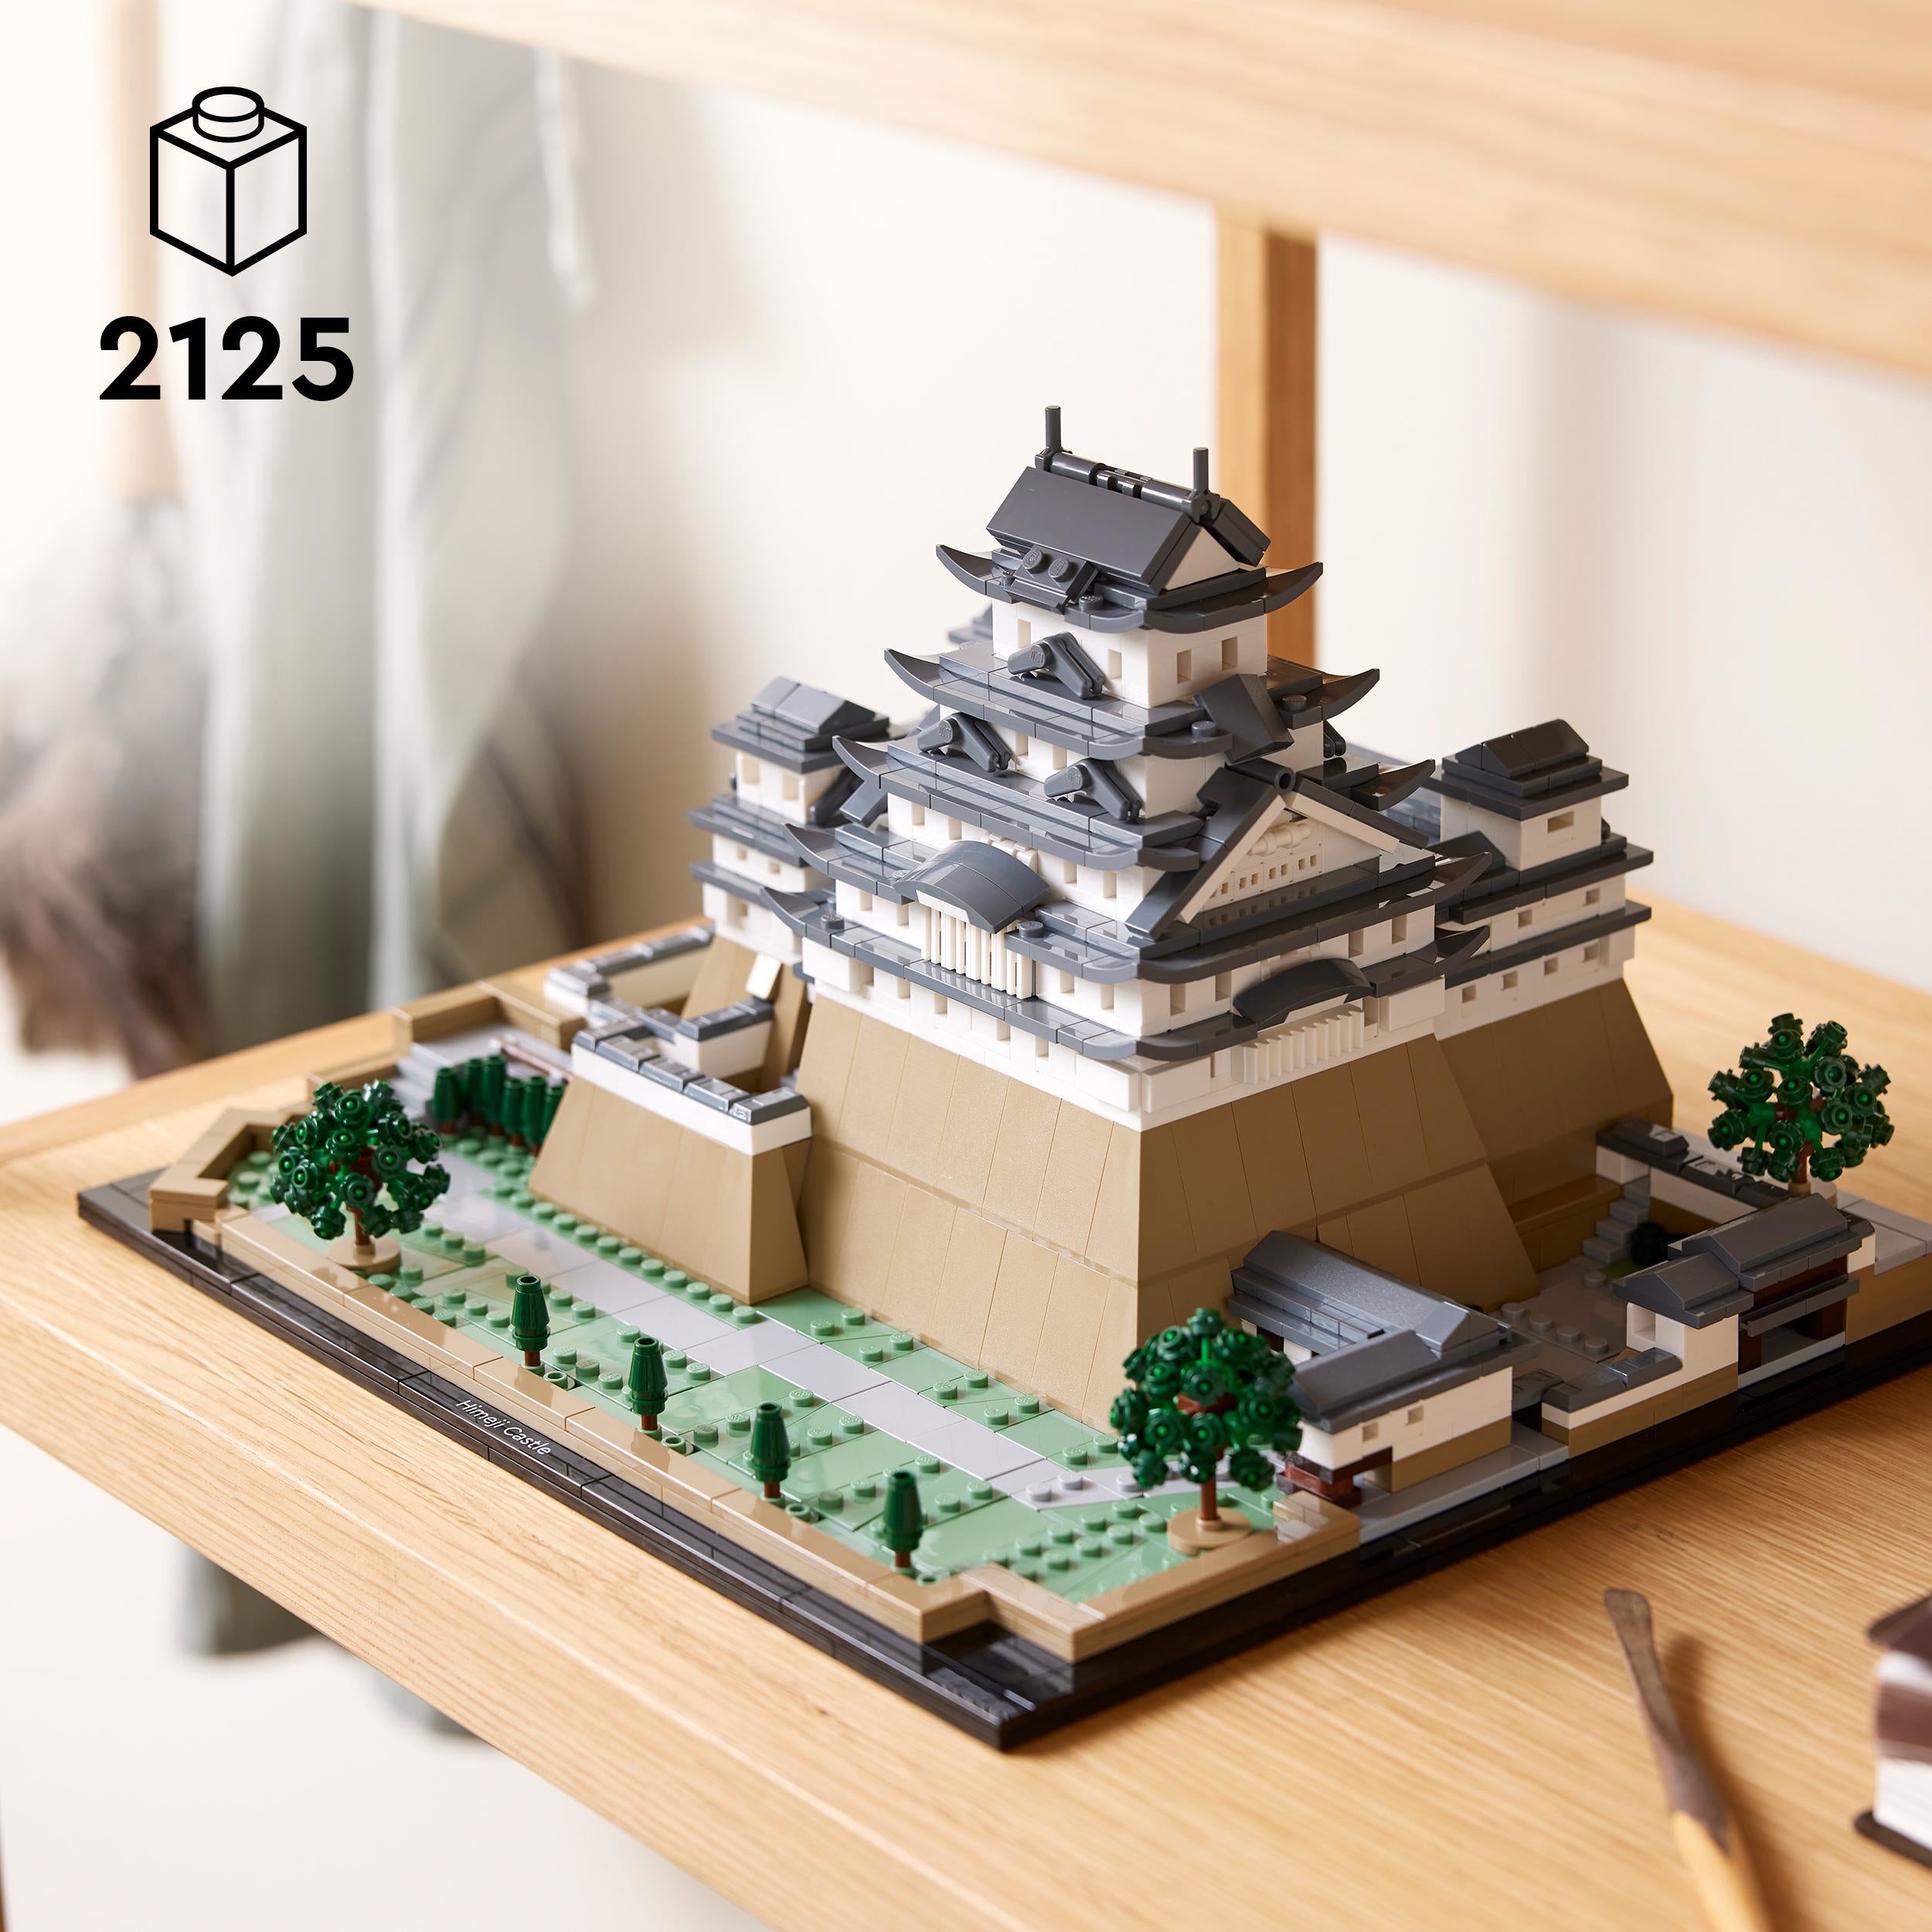 21060 LEGO Architecture Castello di Himeji